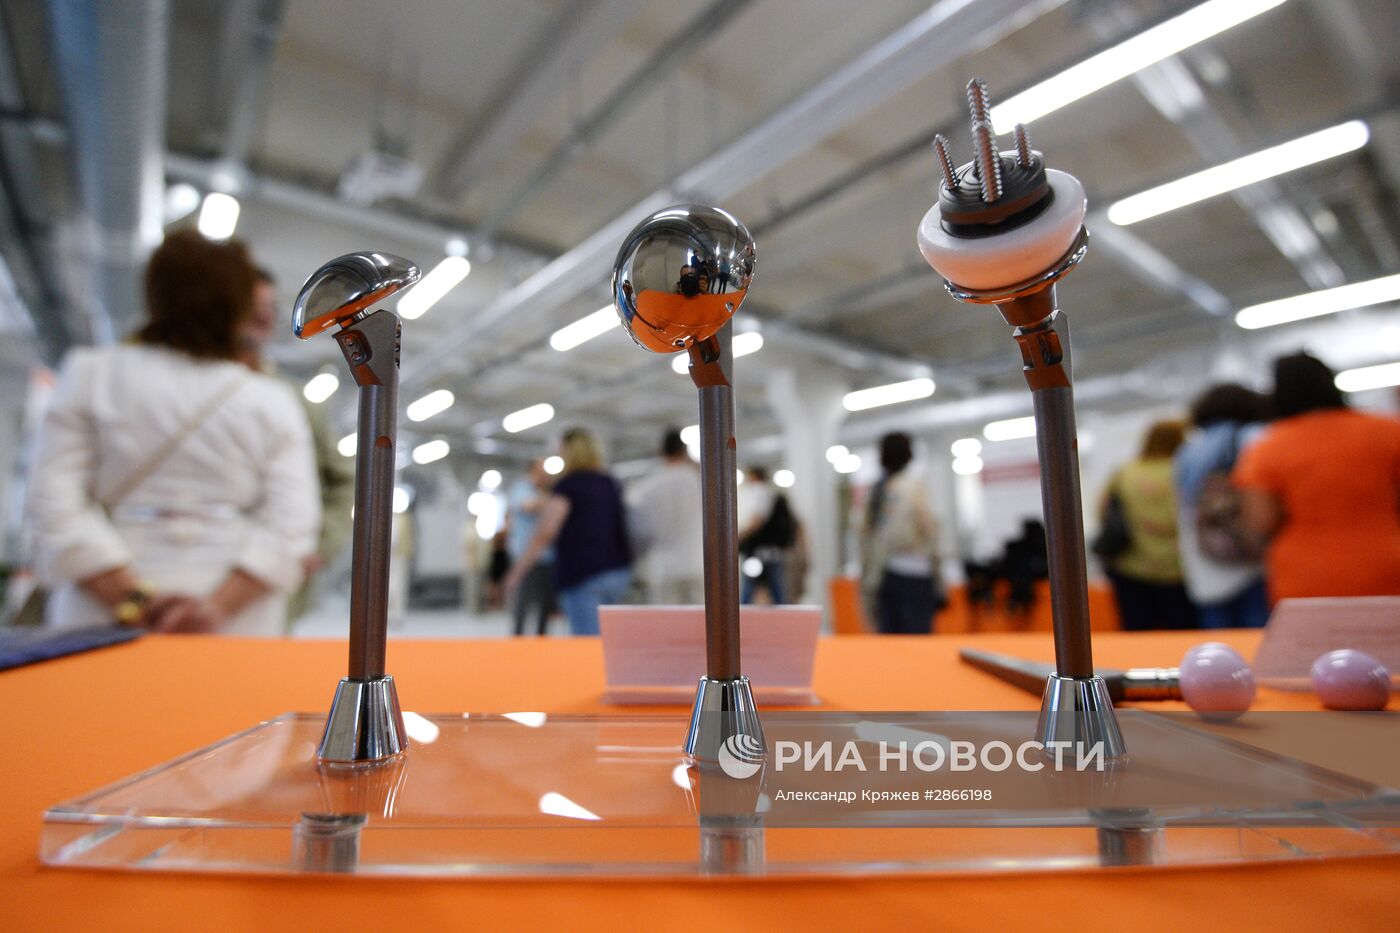 Открытие первой очереди промышленно-медицинского технопарка в Новосибирске